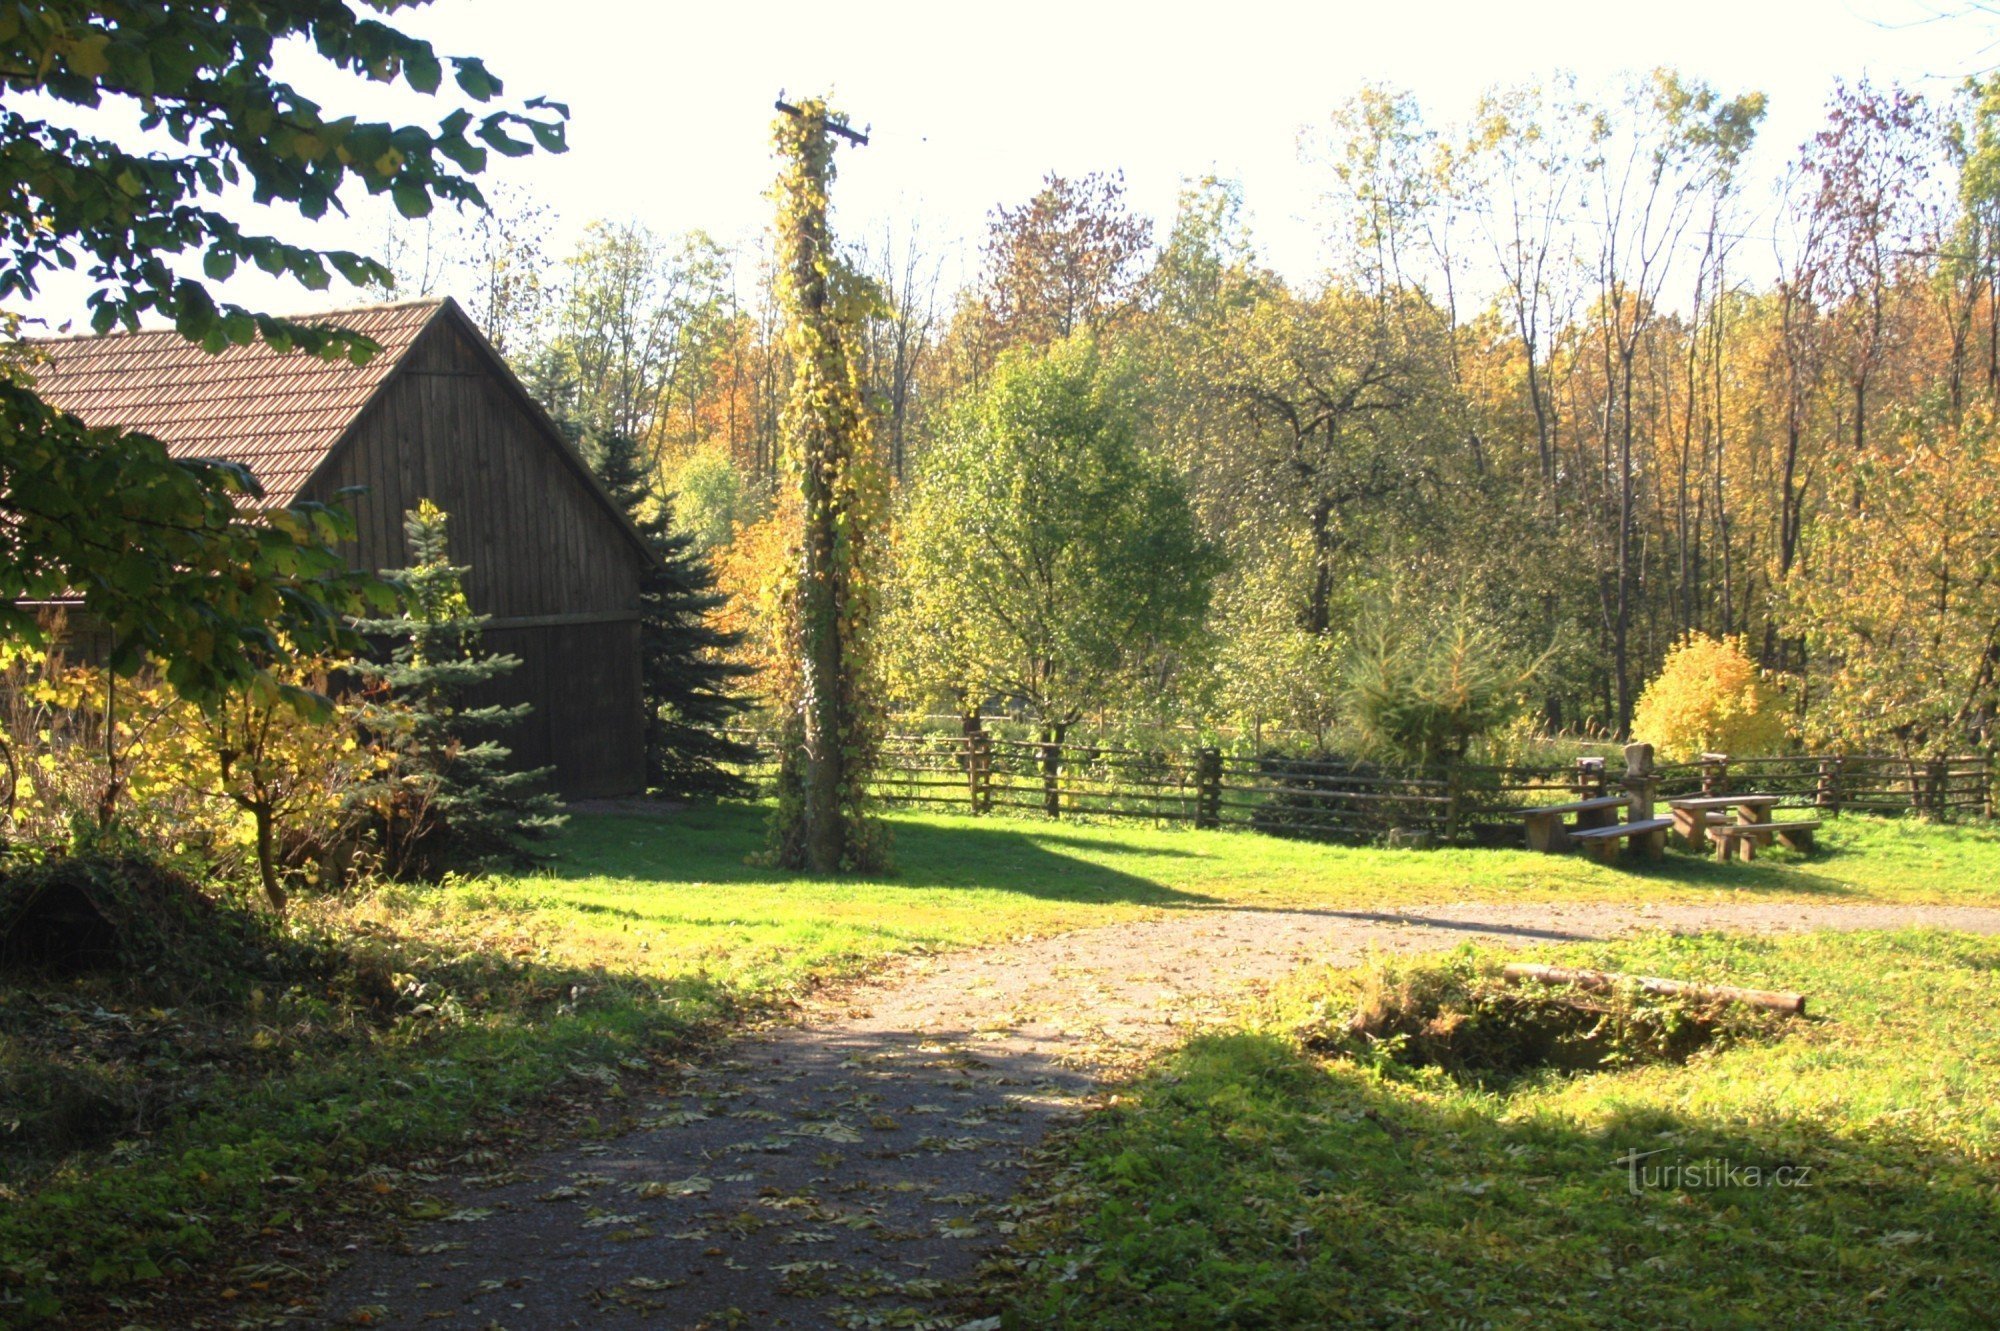 Uma área de parque em frente ao bosque